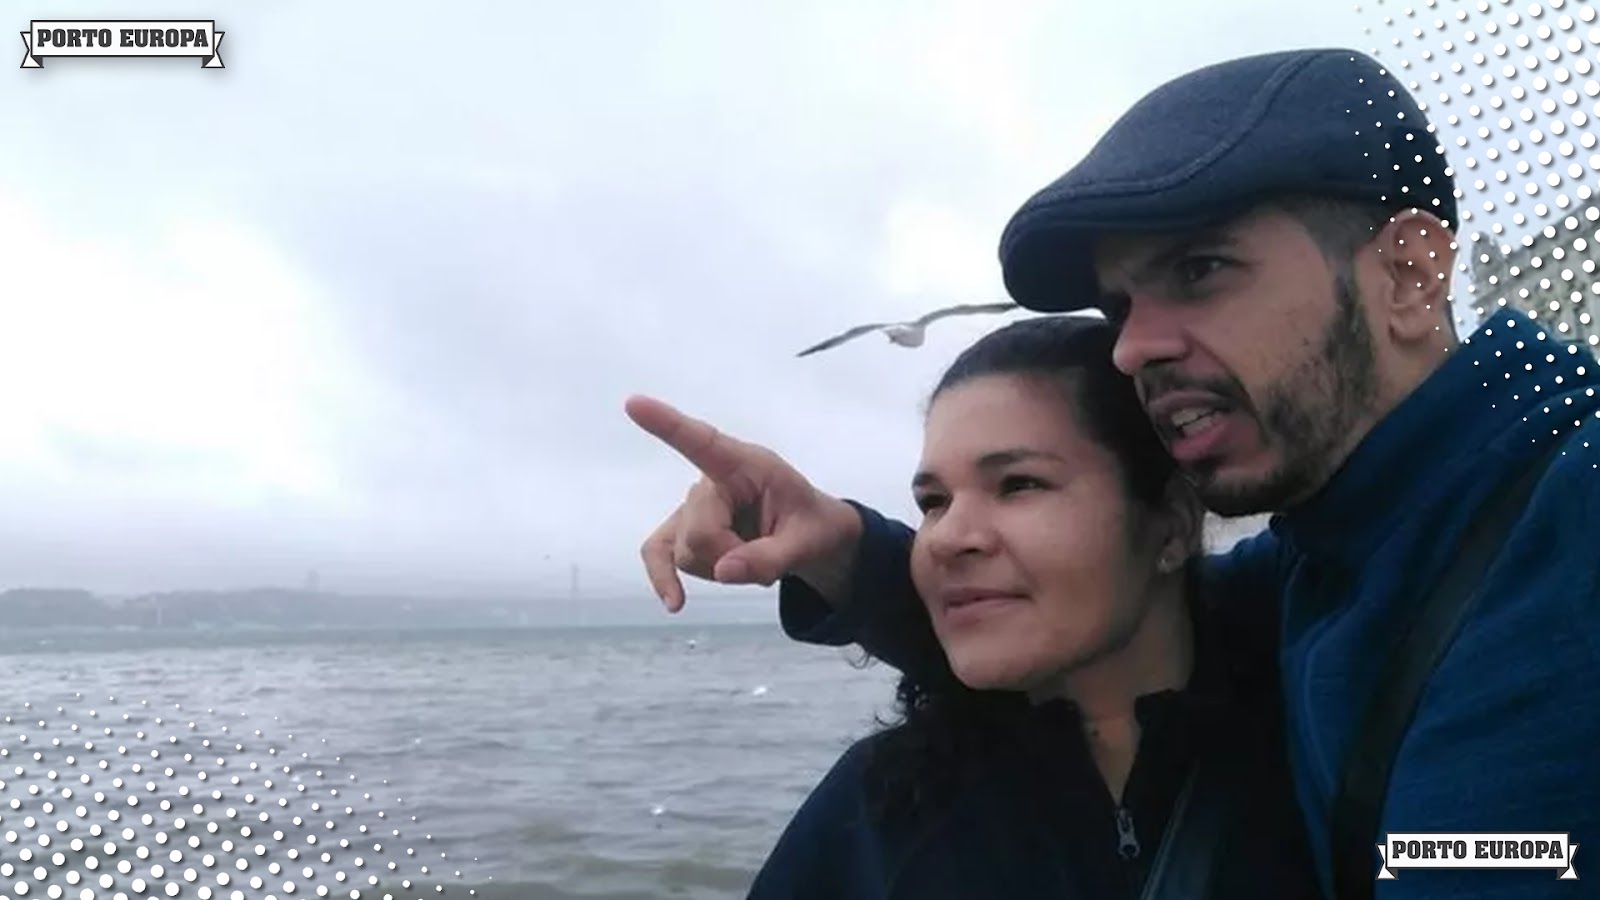 Foto de um homem branco com uma boina, identificado como Uelber Oliveira, de 33 anos e sua esposa, ambos olhando o mar.